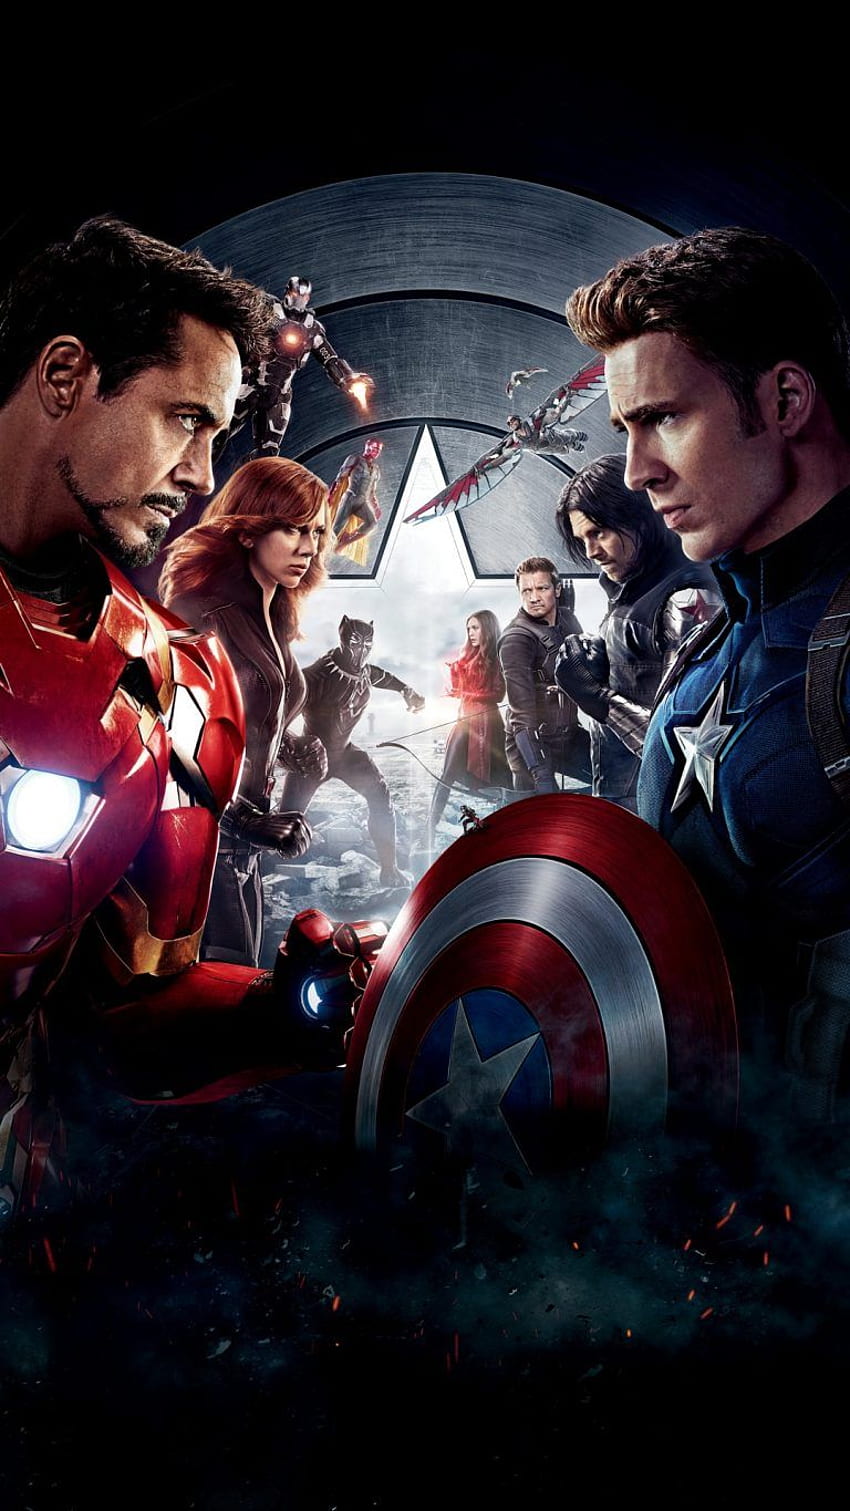 Hình nền Avengers - tuyệt vời và đầy sức mạnh! Đồng hành với các siêu anh hùng của nhóm như Iron Man, Thor, Hulk và người hùng mới như Black Panther và Captain Marvel để chống lại bất kỳ thế lực đen tối nào trên trái đất. Tải về ngay những hình ảnh này để ngắm nhìn và cảm nhận sức mạnh từ đội Avengers.